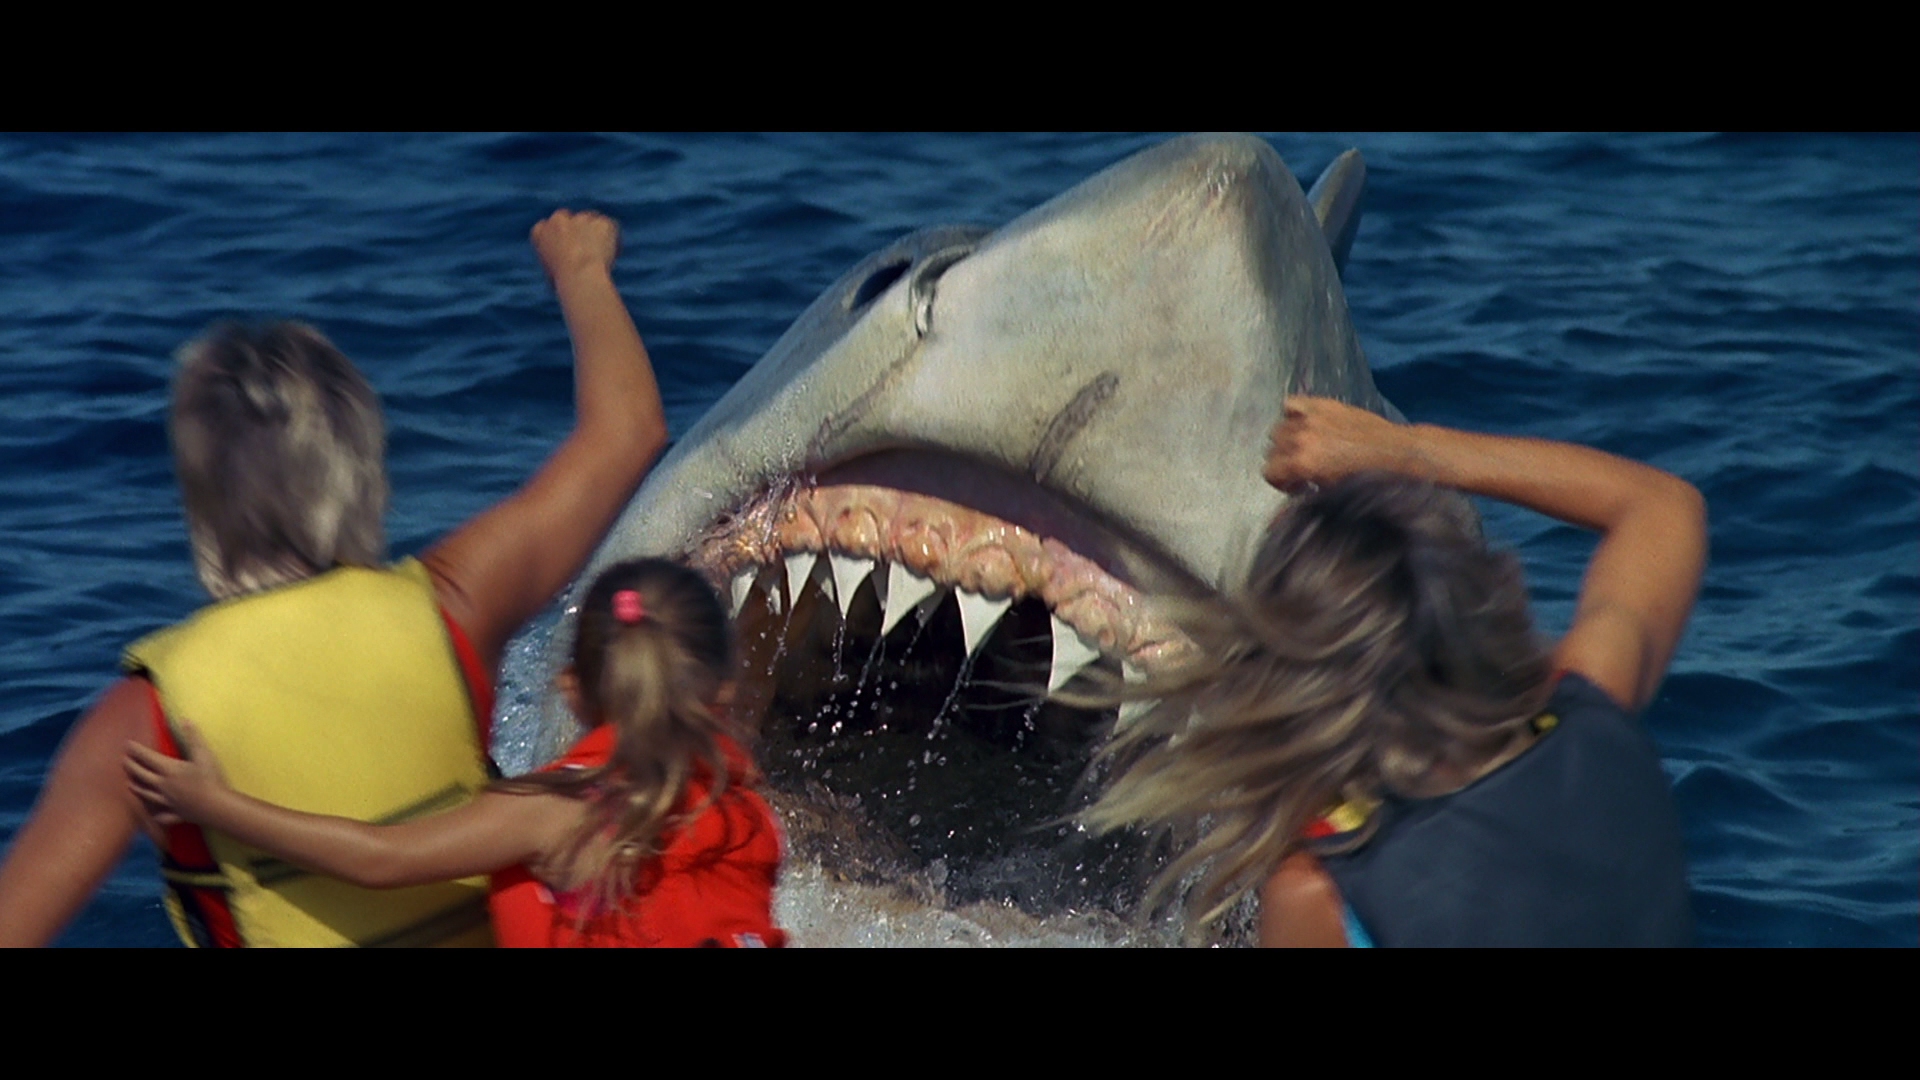 Jaws: The Revenge #9